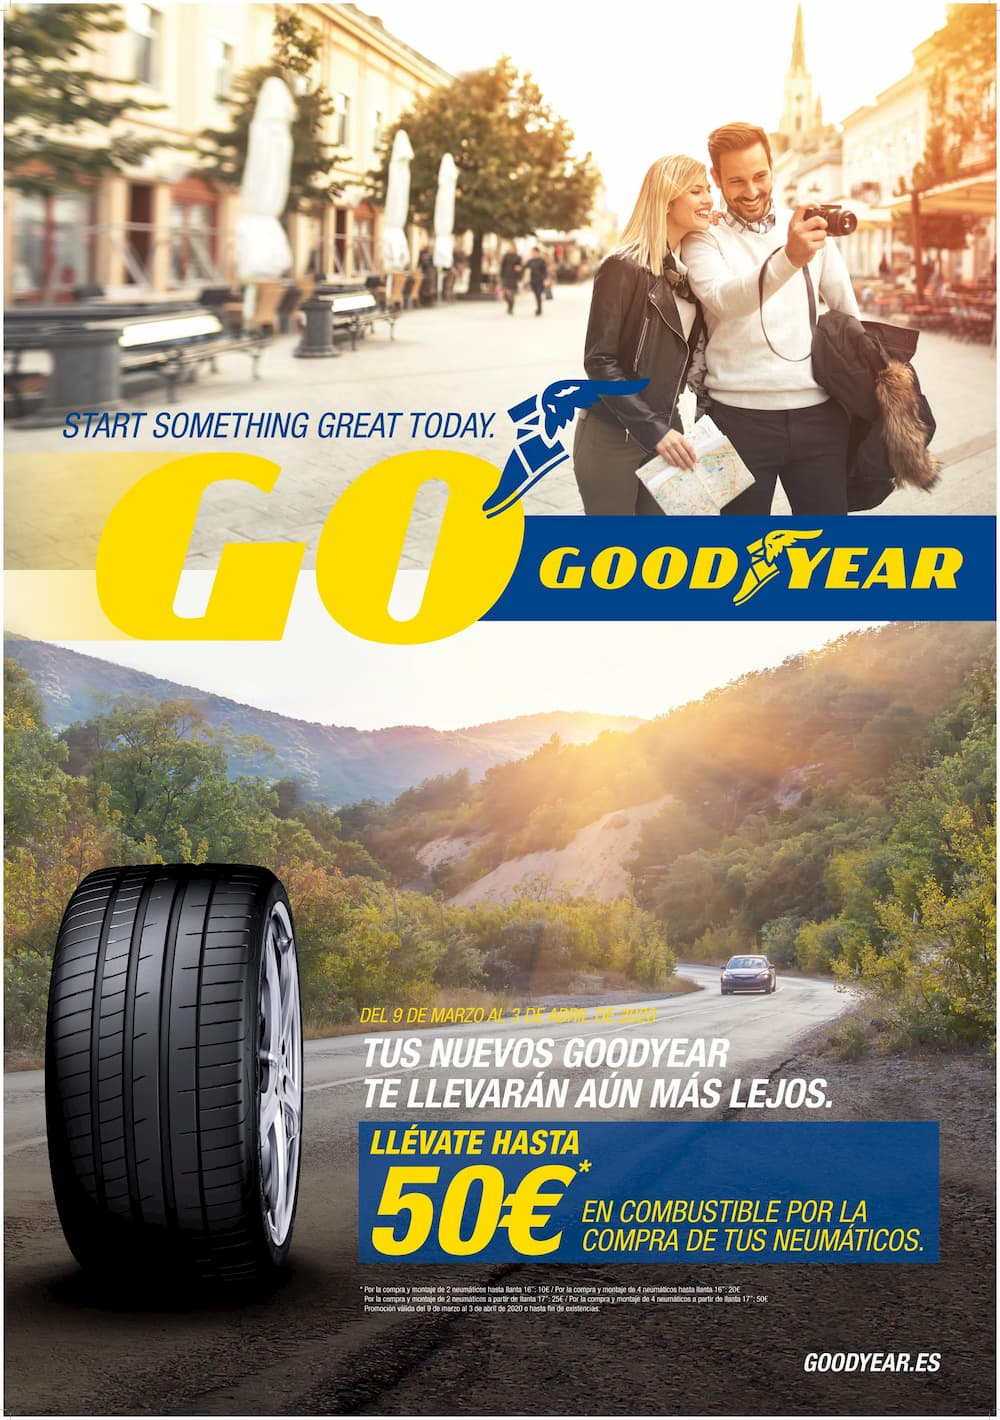 Goodyear te regala hasta 50€ en combustible por la compra de sus neumáticos